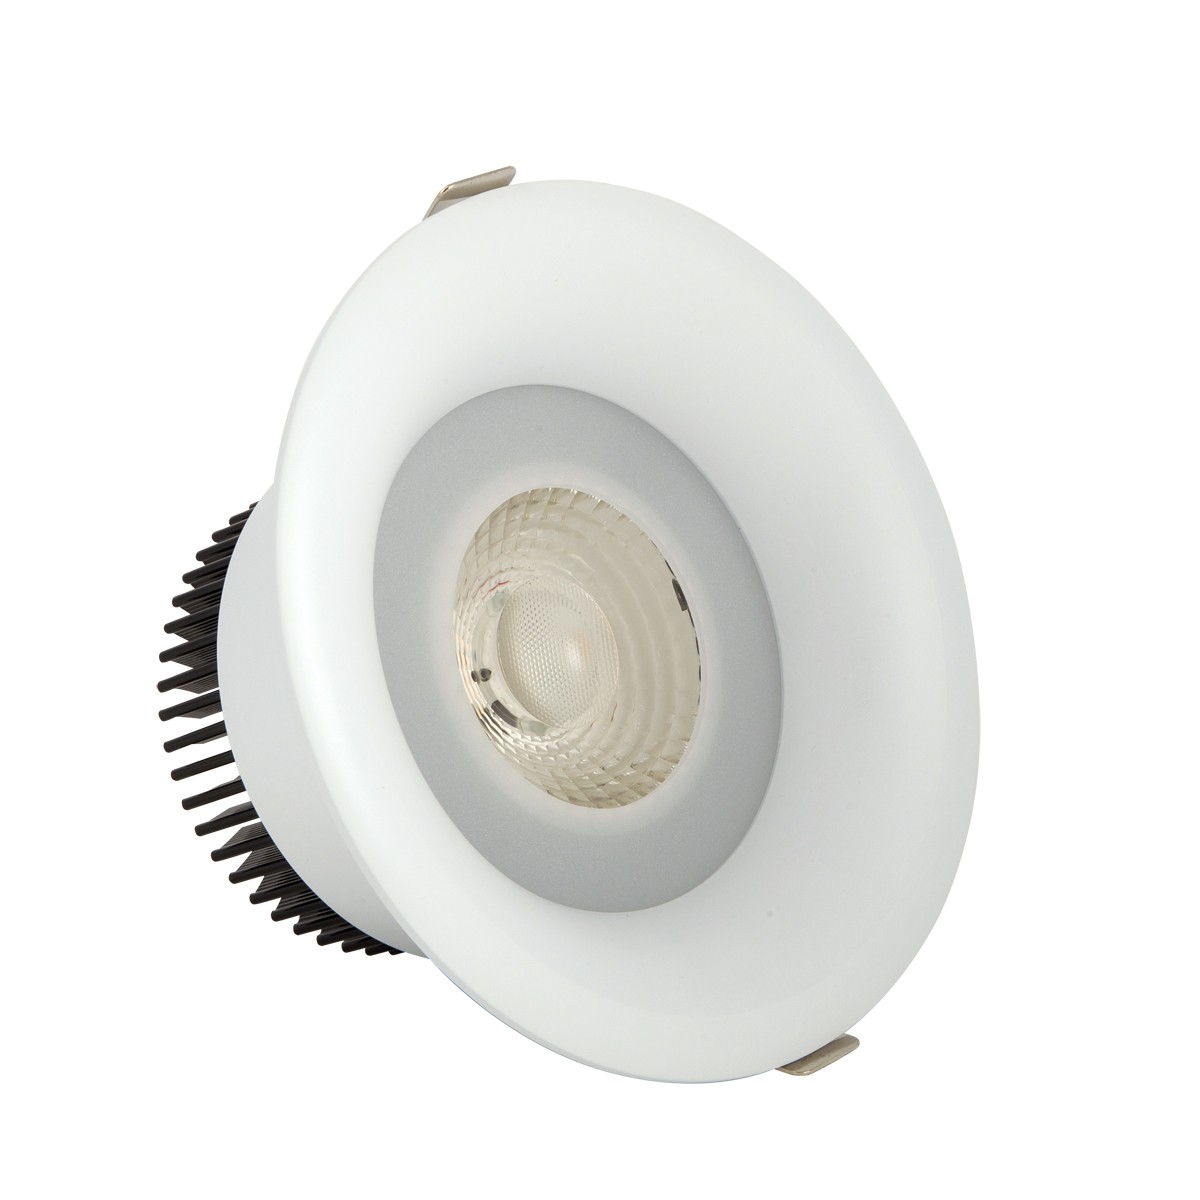 Φωτιστικό downlight στρογγυλό  λευκού χρώματος 30W 3000K 2700 lumen με ενσωματωμένο λαμπτήρα 36-40D VK/04150/W/W/36